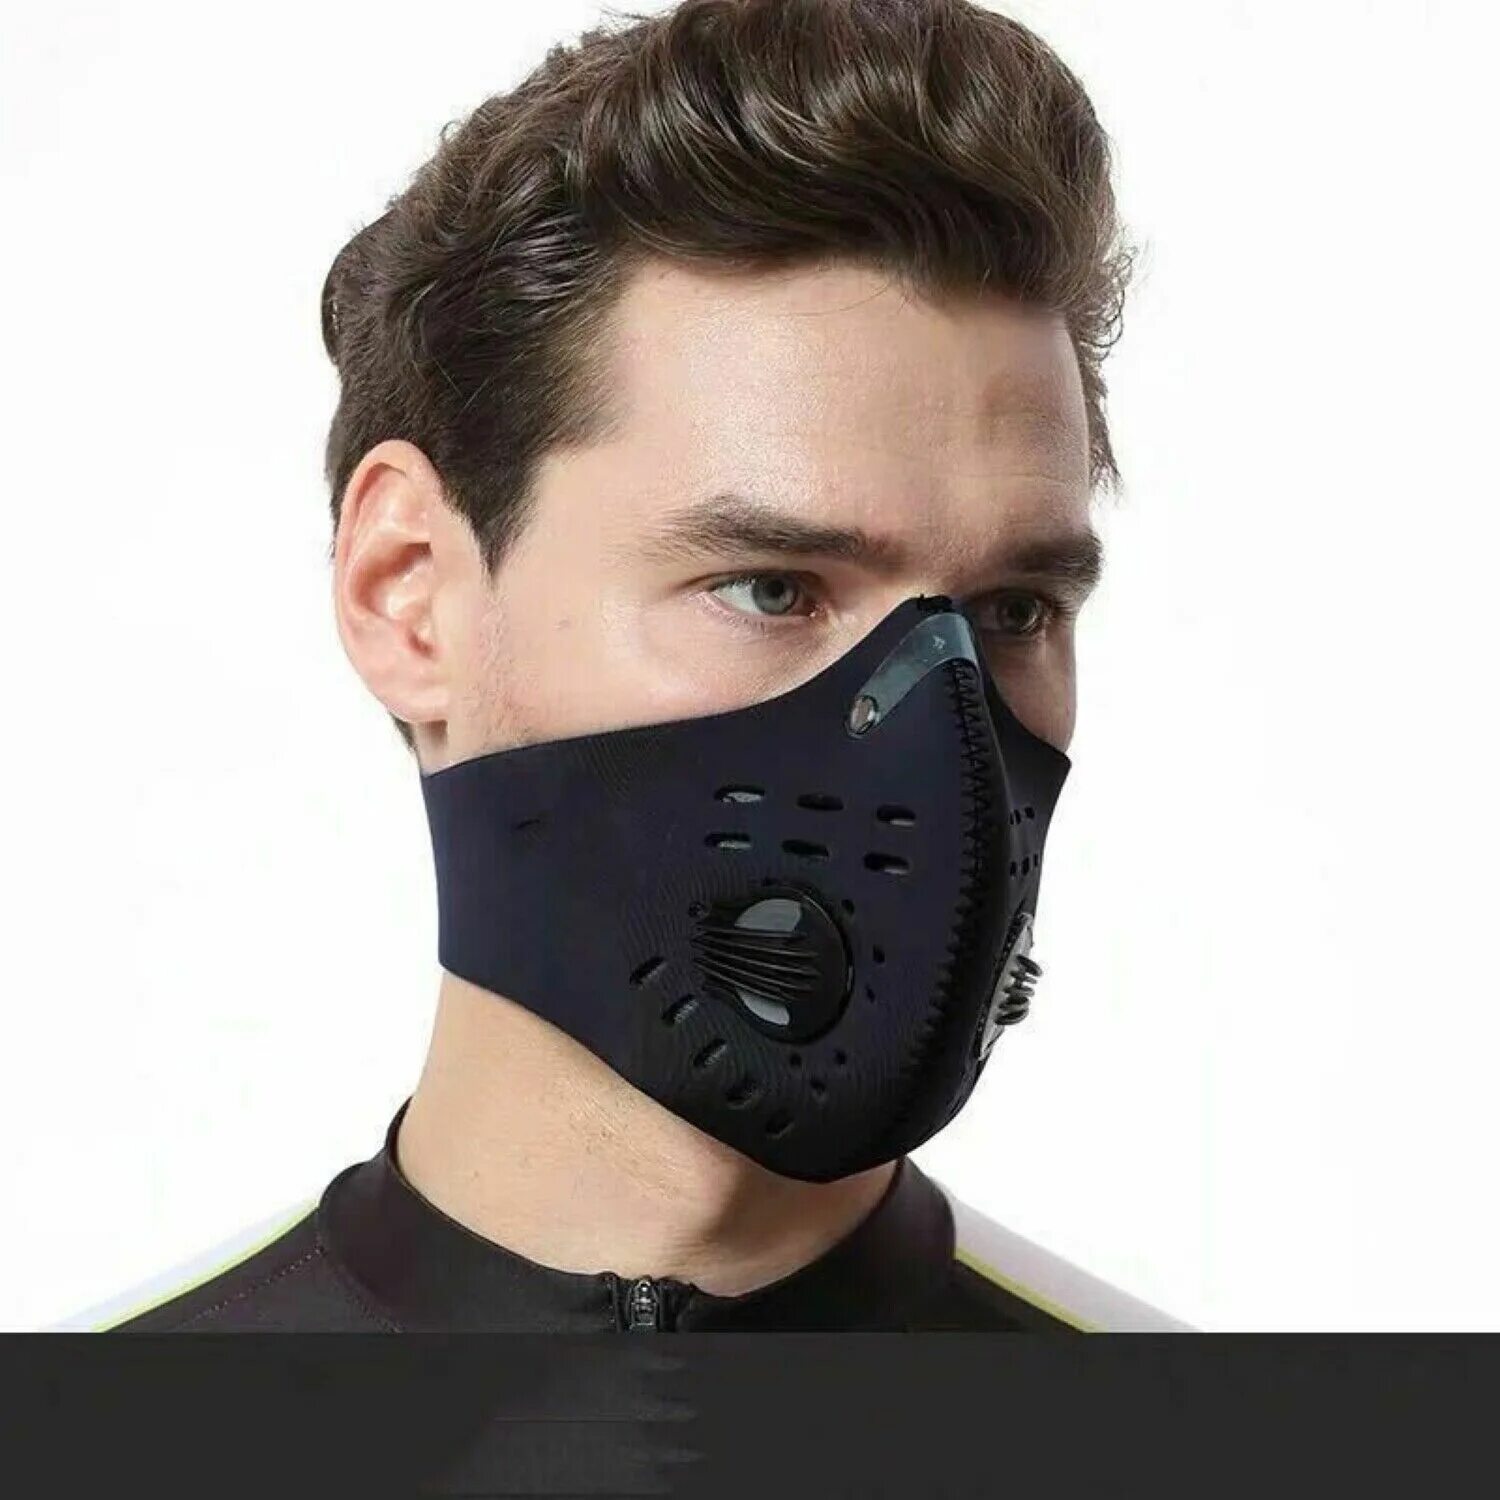 Защитная маска респиратор activated Carbone kn95 (n95). XINTOWN защитная маска. Маска pm01a. C28862-5 респиратор веломаска. Купить маску с фильтром